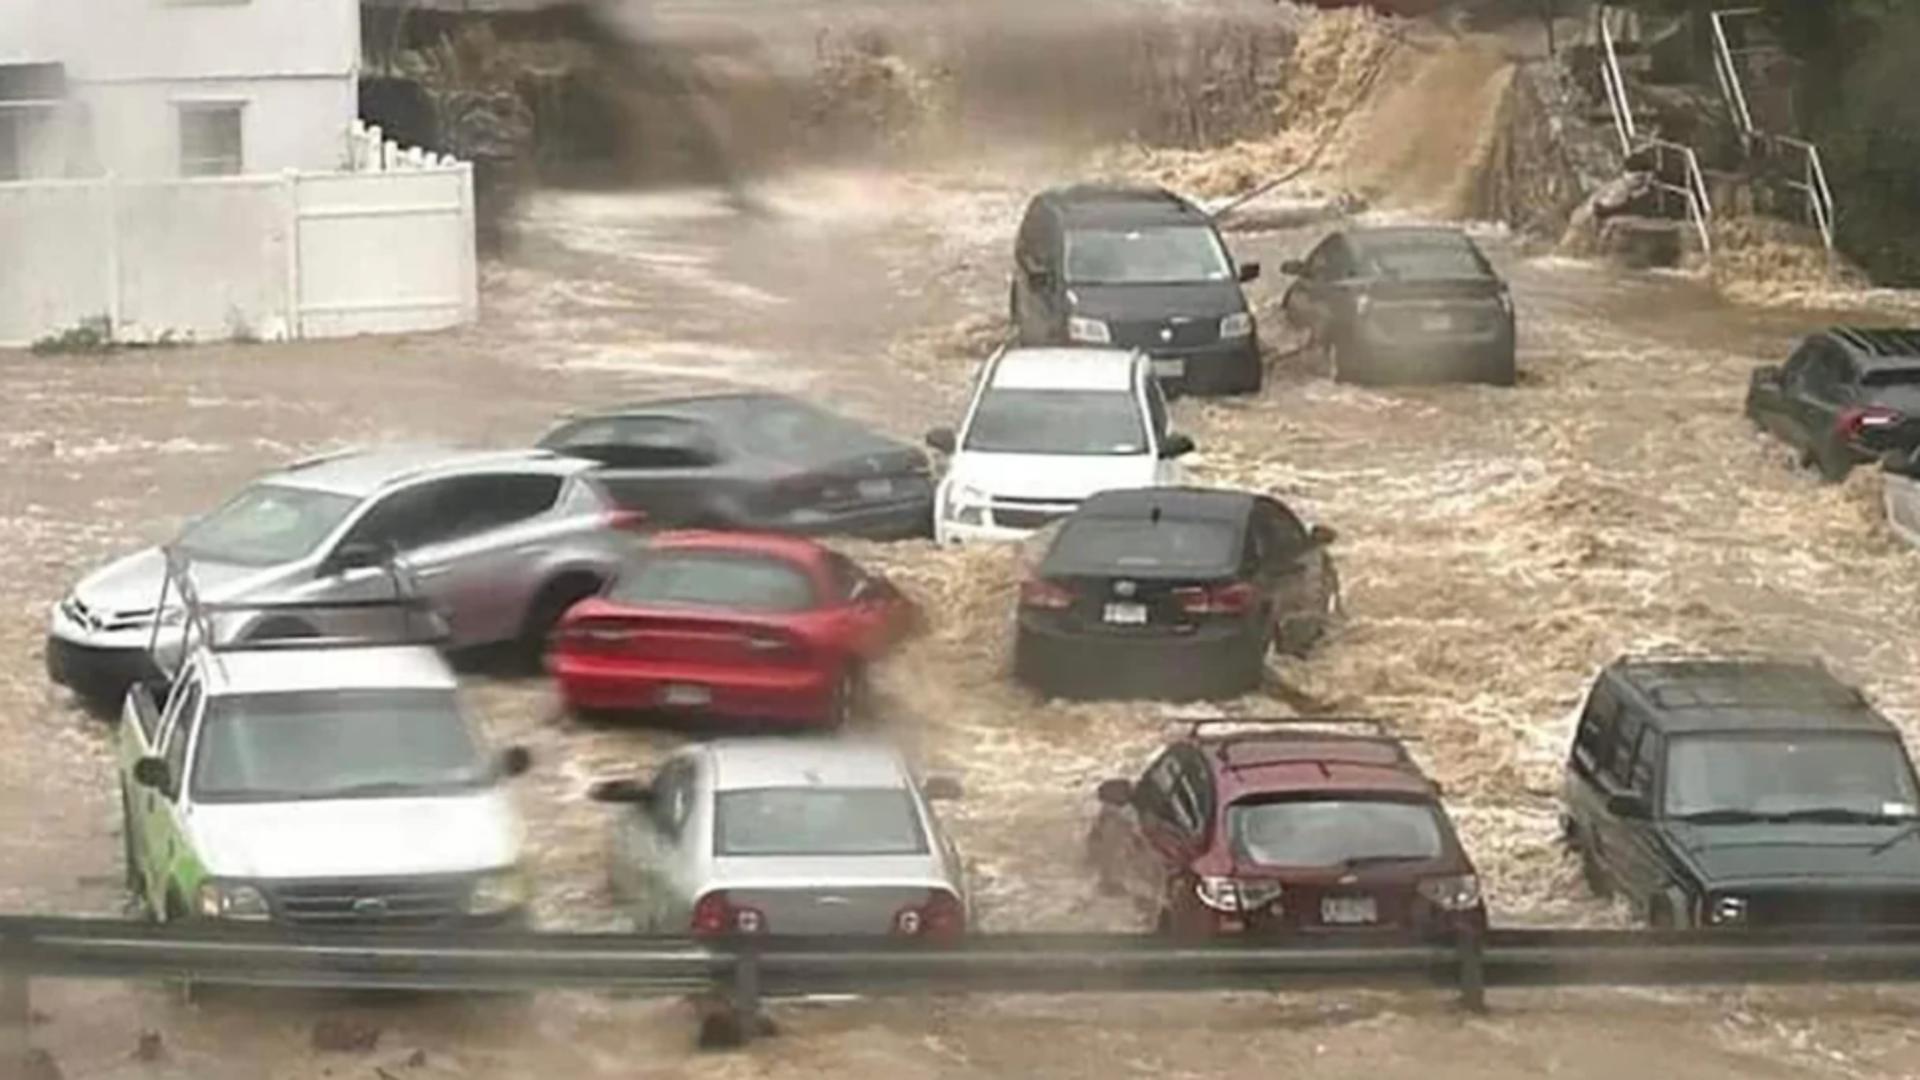 POTOP în America: Stare de urgență în New York după ploi masive – Poduri luate de ape, străzi inundate și primele victime